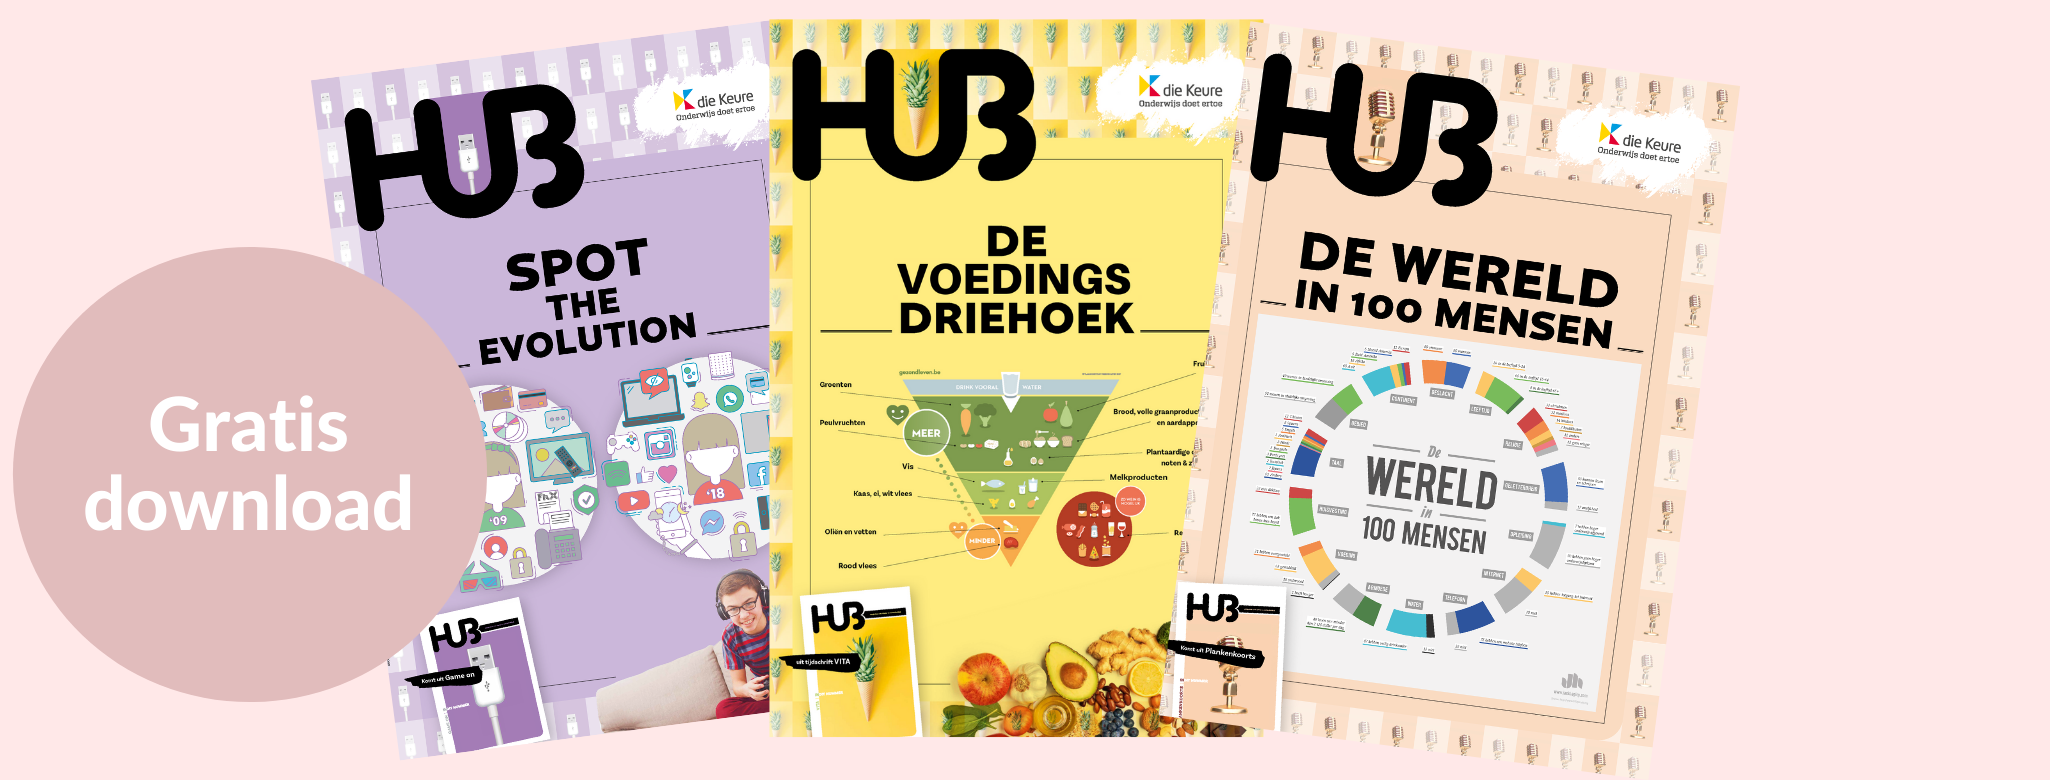 Gratis download | Hub | die Keure